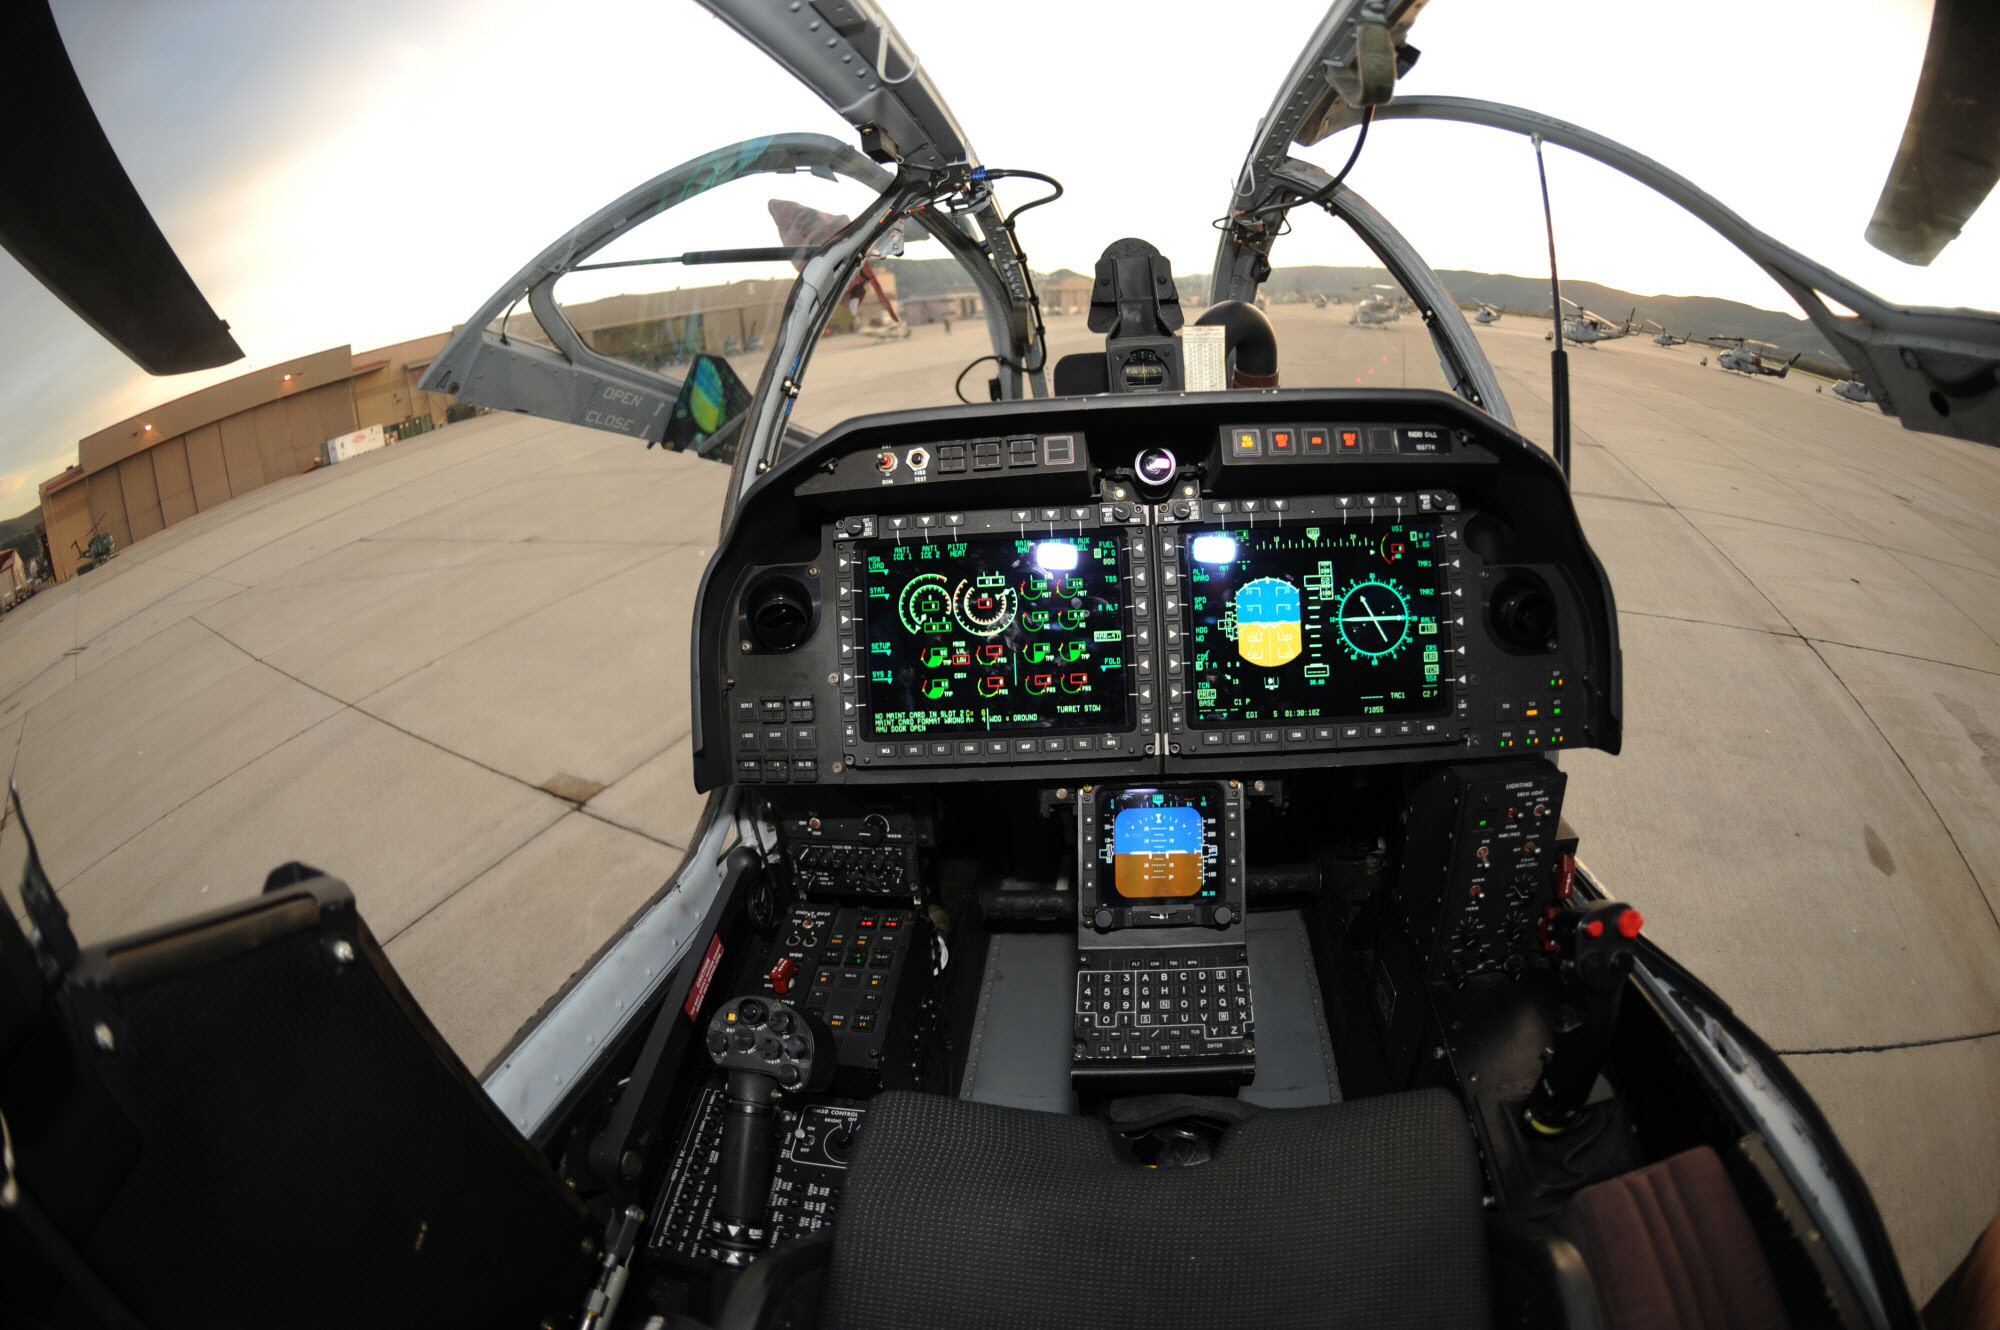 2000x1330 Aircraft cockpit pics